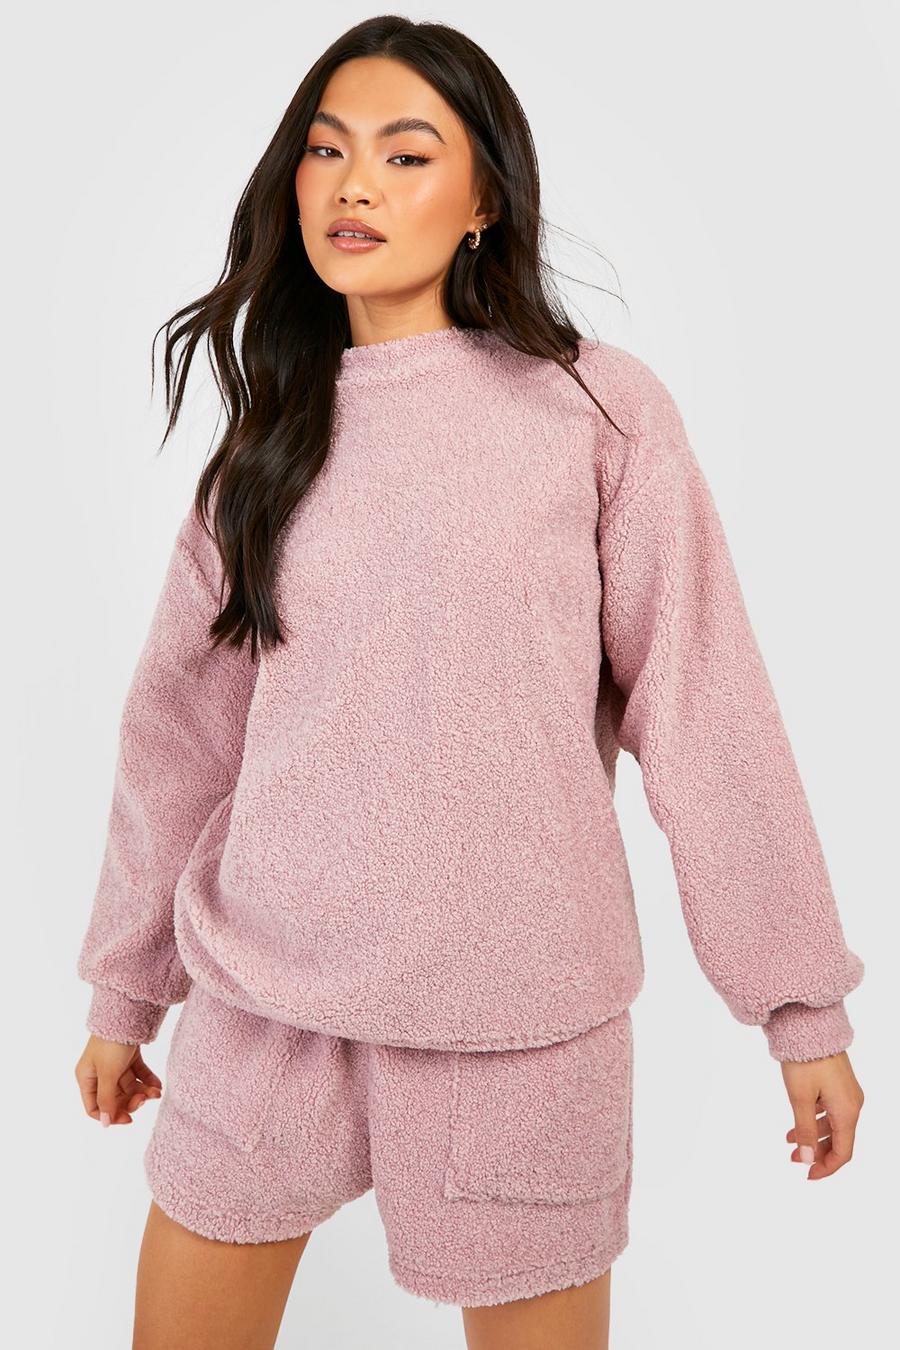 Blush pink Mix And Match Popcorn Fleece Sweatshirt